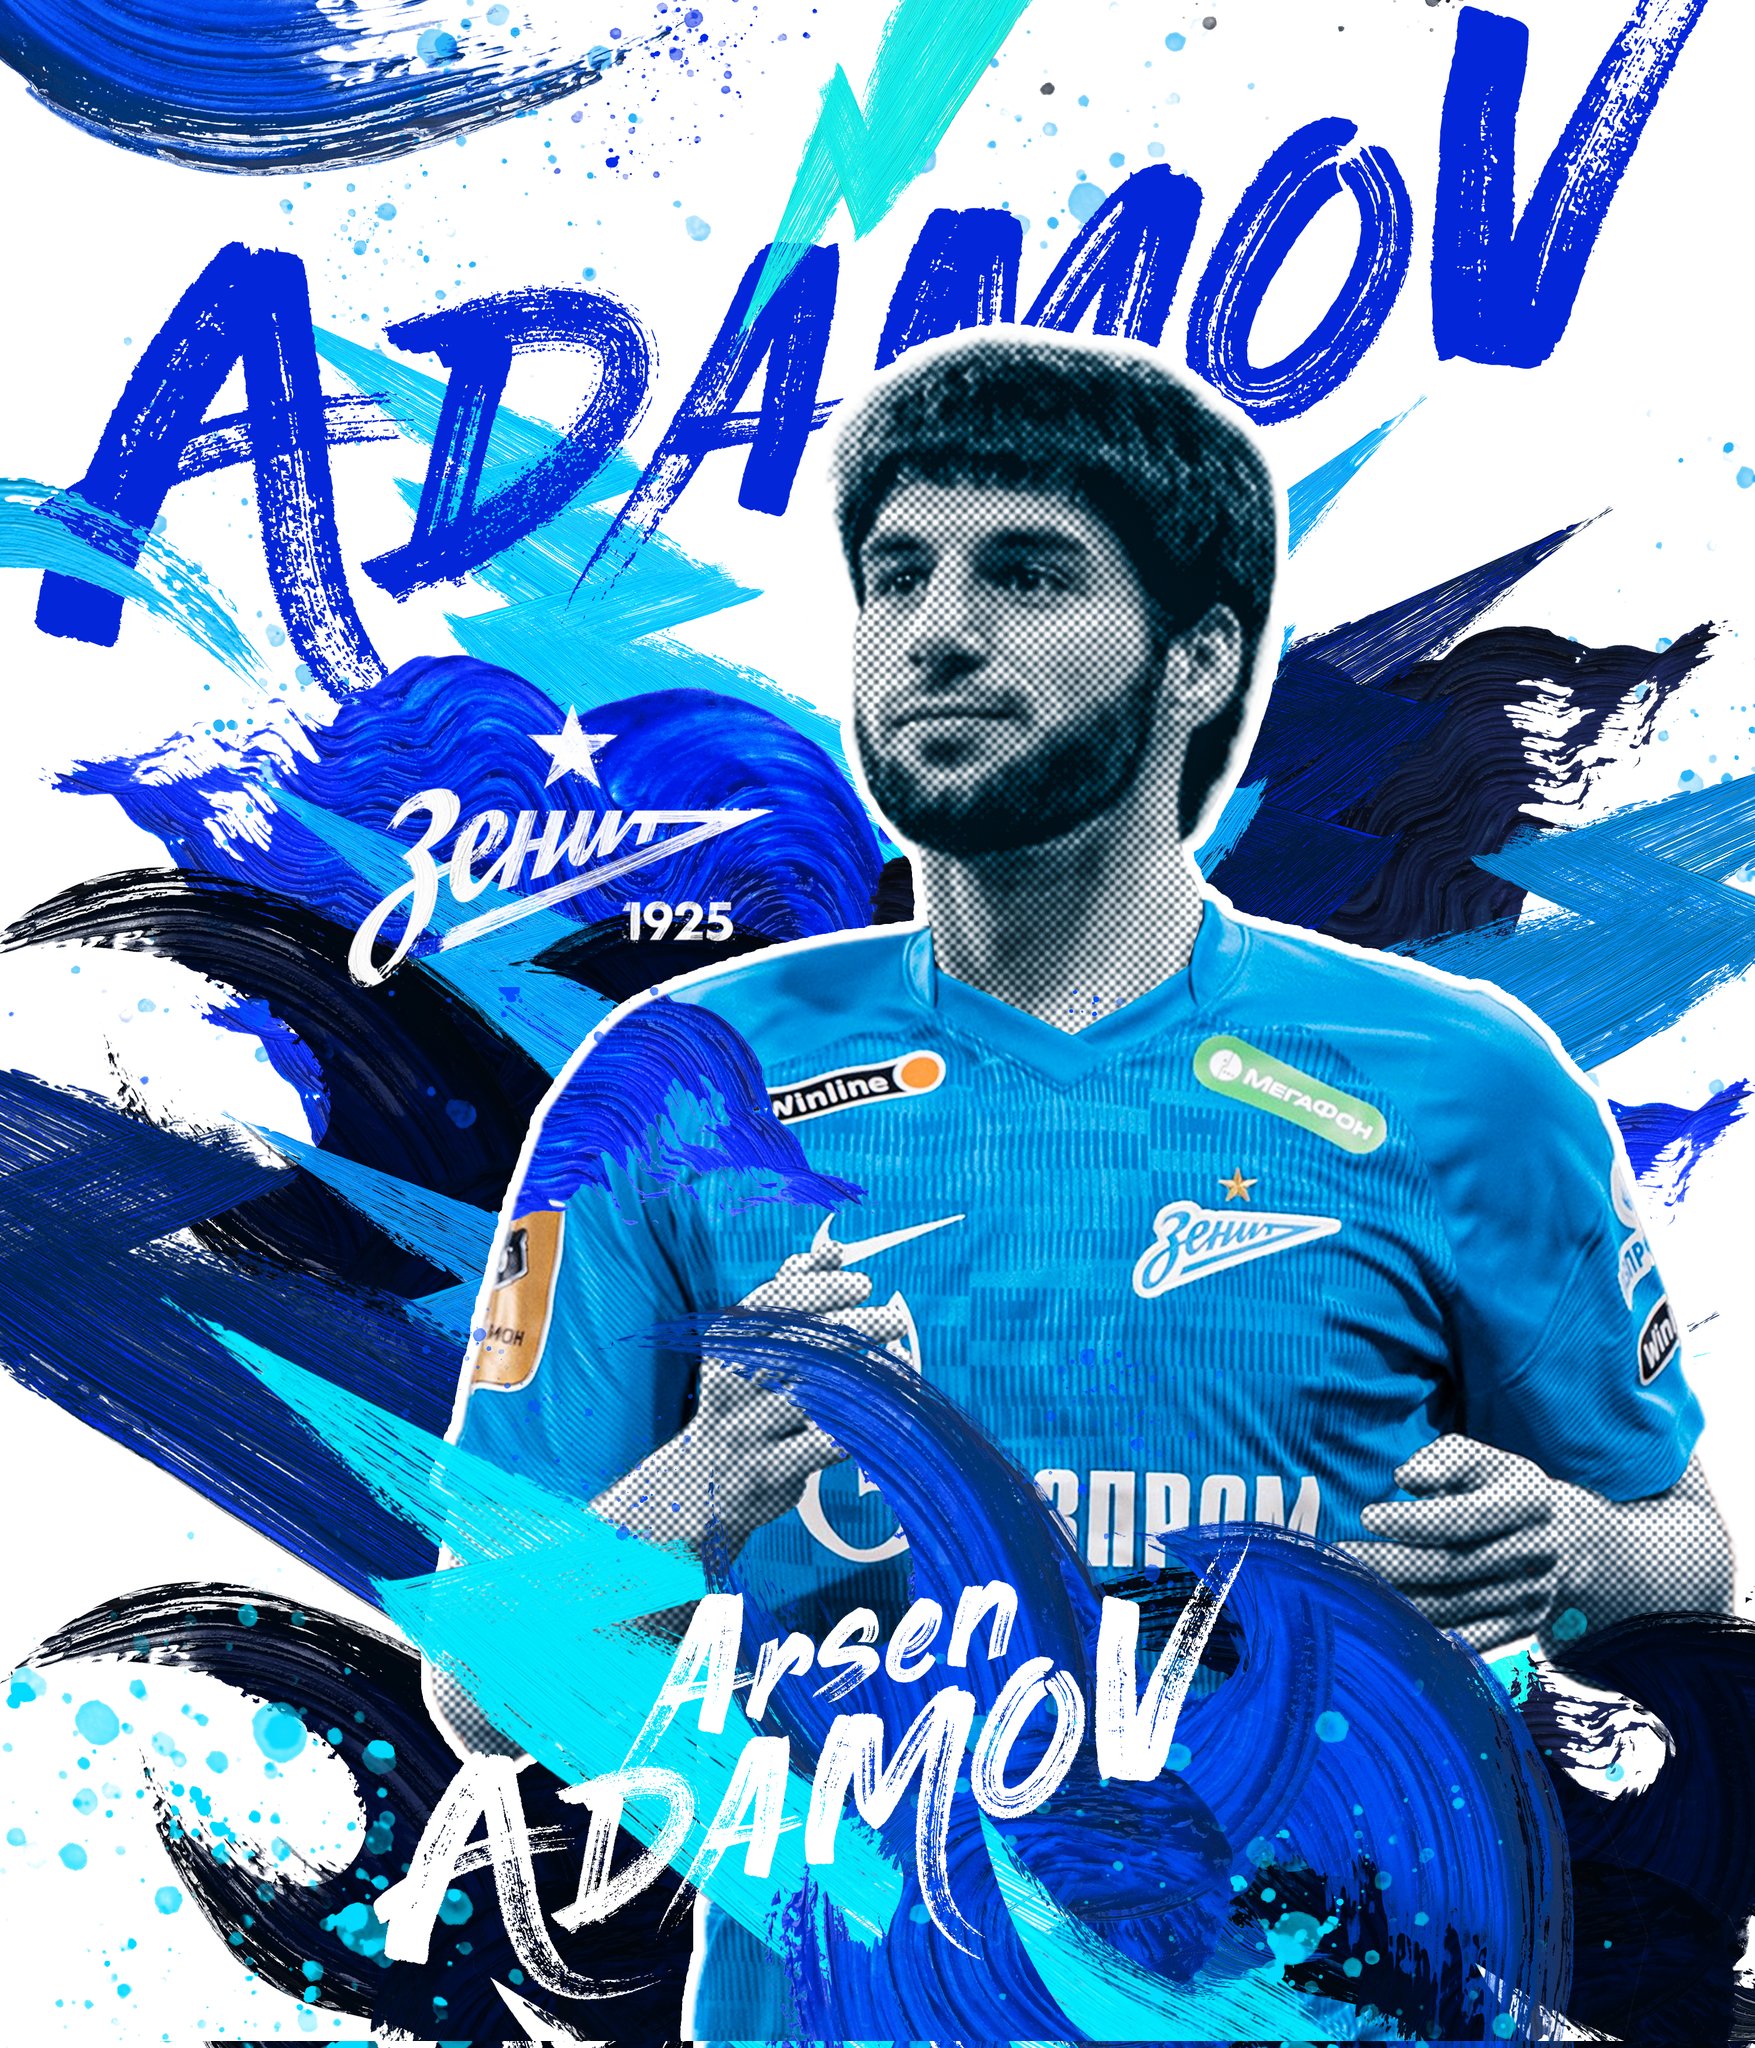 Arsen Adamow podpisał kontrakt z Zenitem